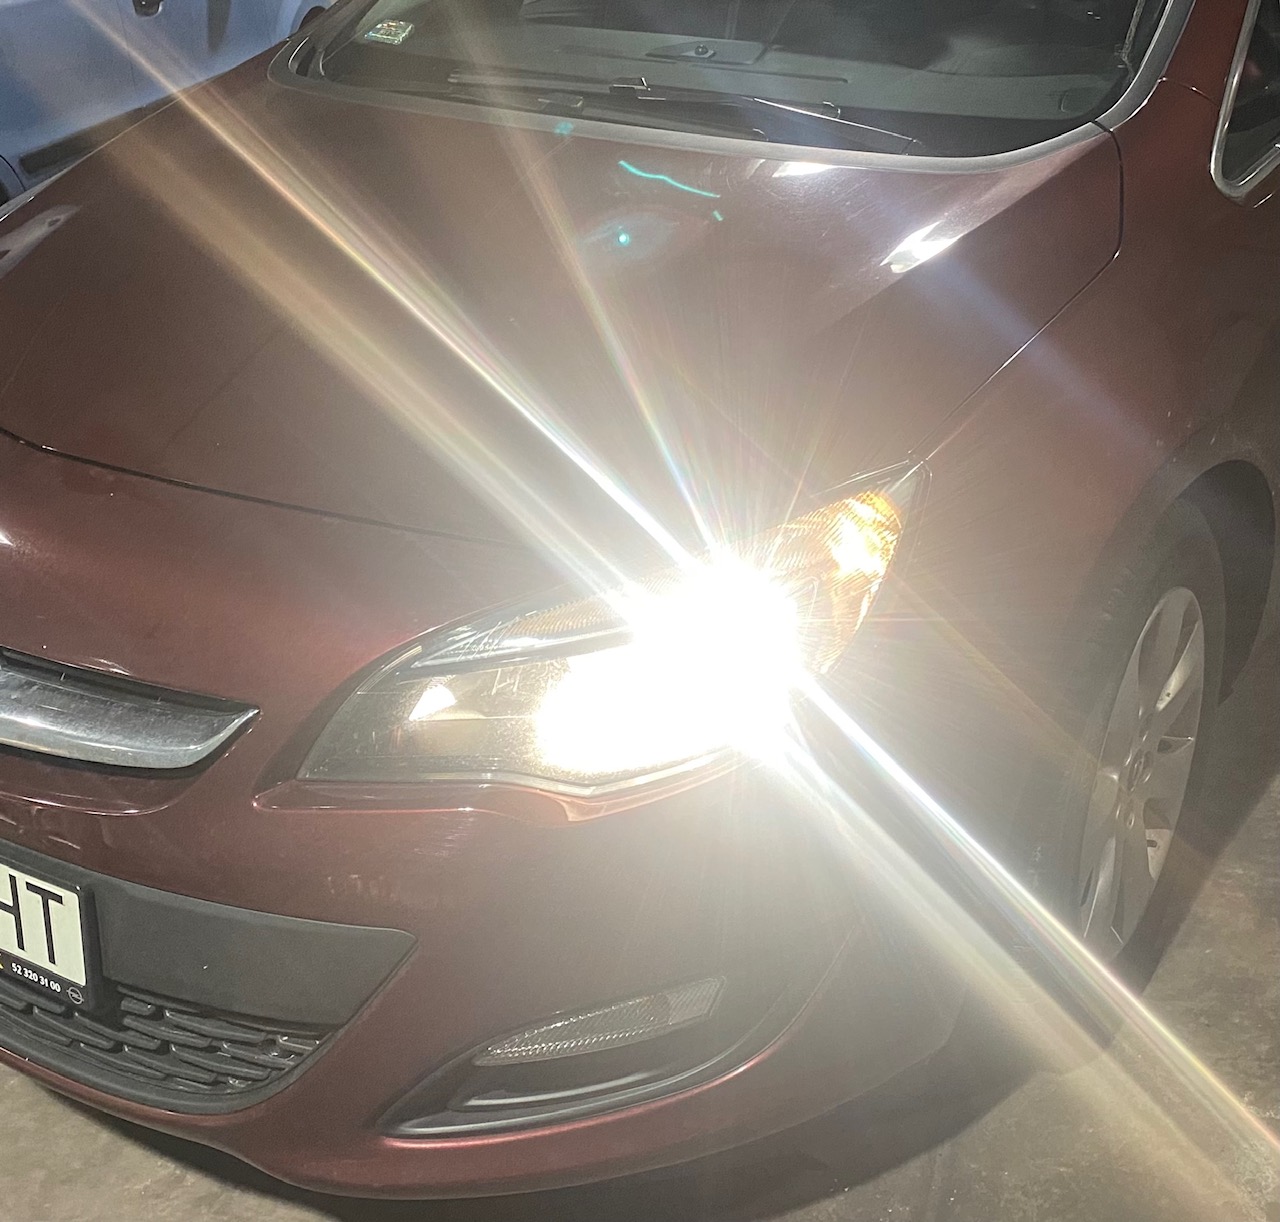 Wymiana żarówek Opel Astra, naprawa oświetlenia w samochodzie.